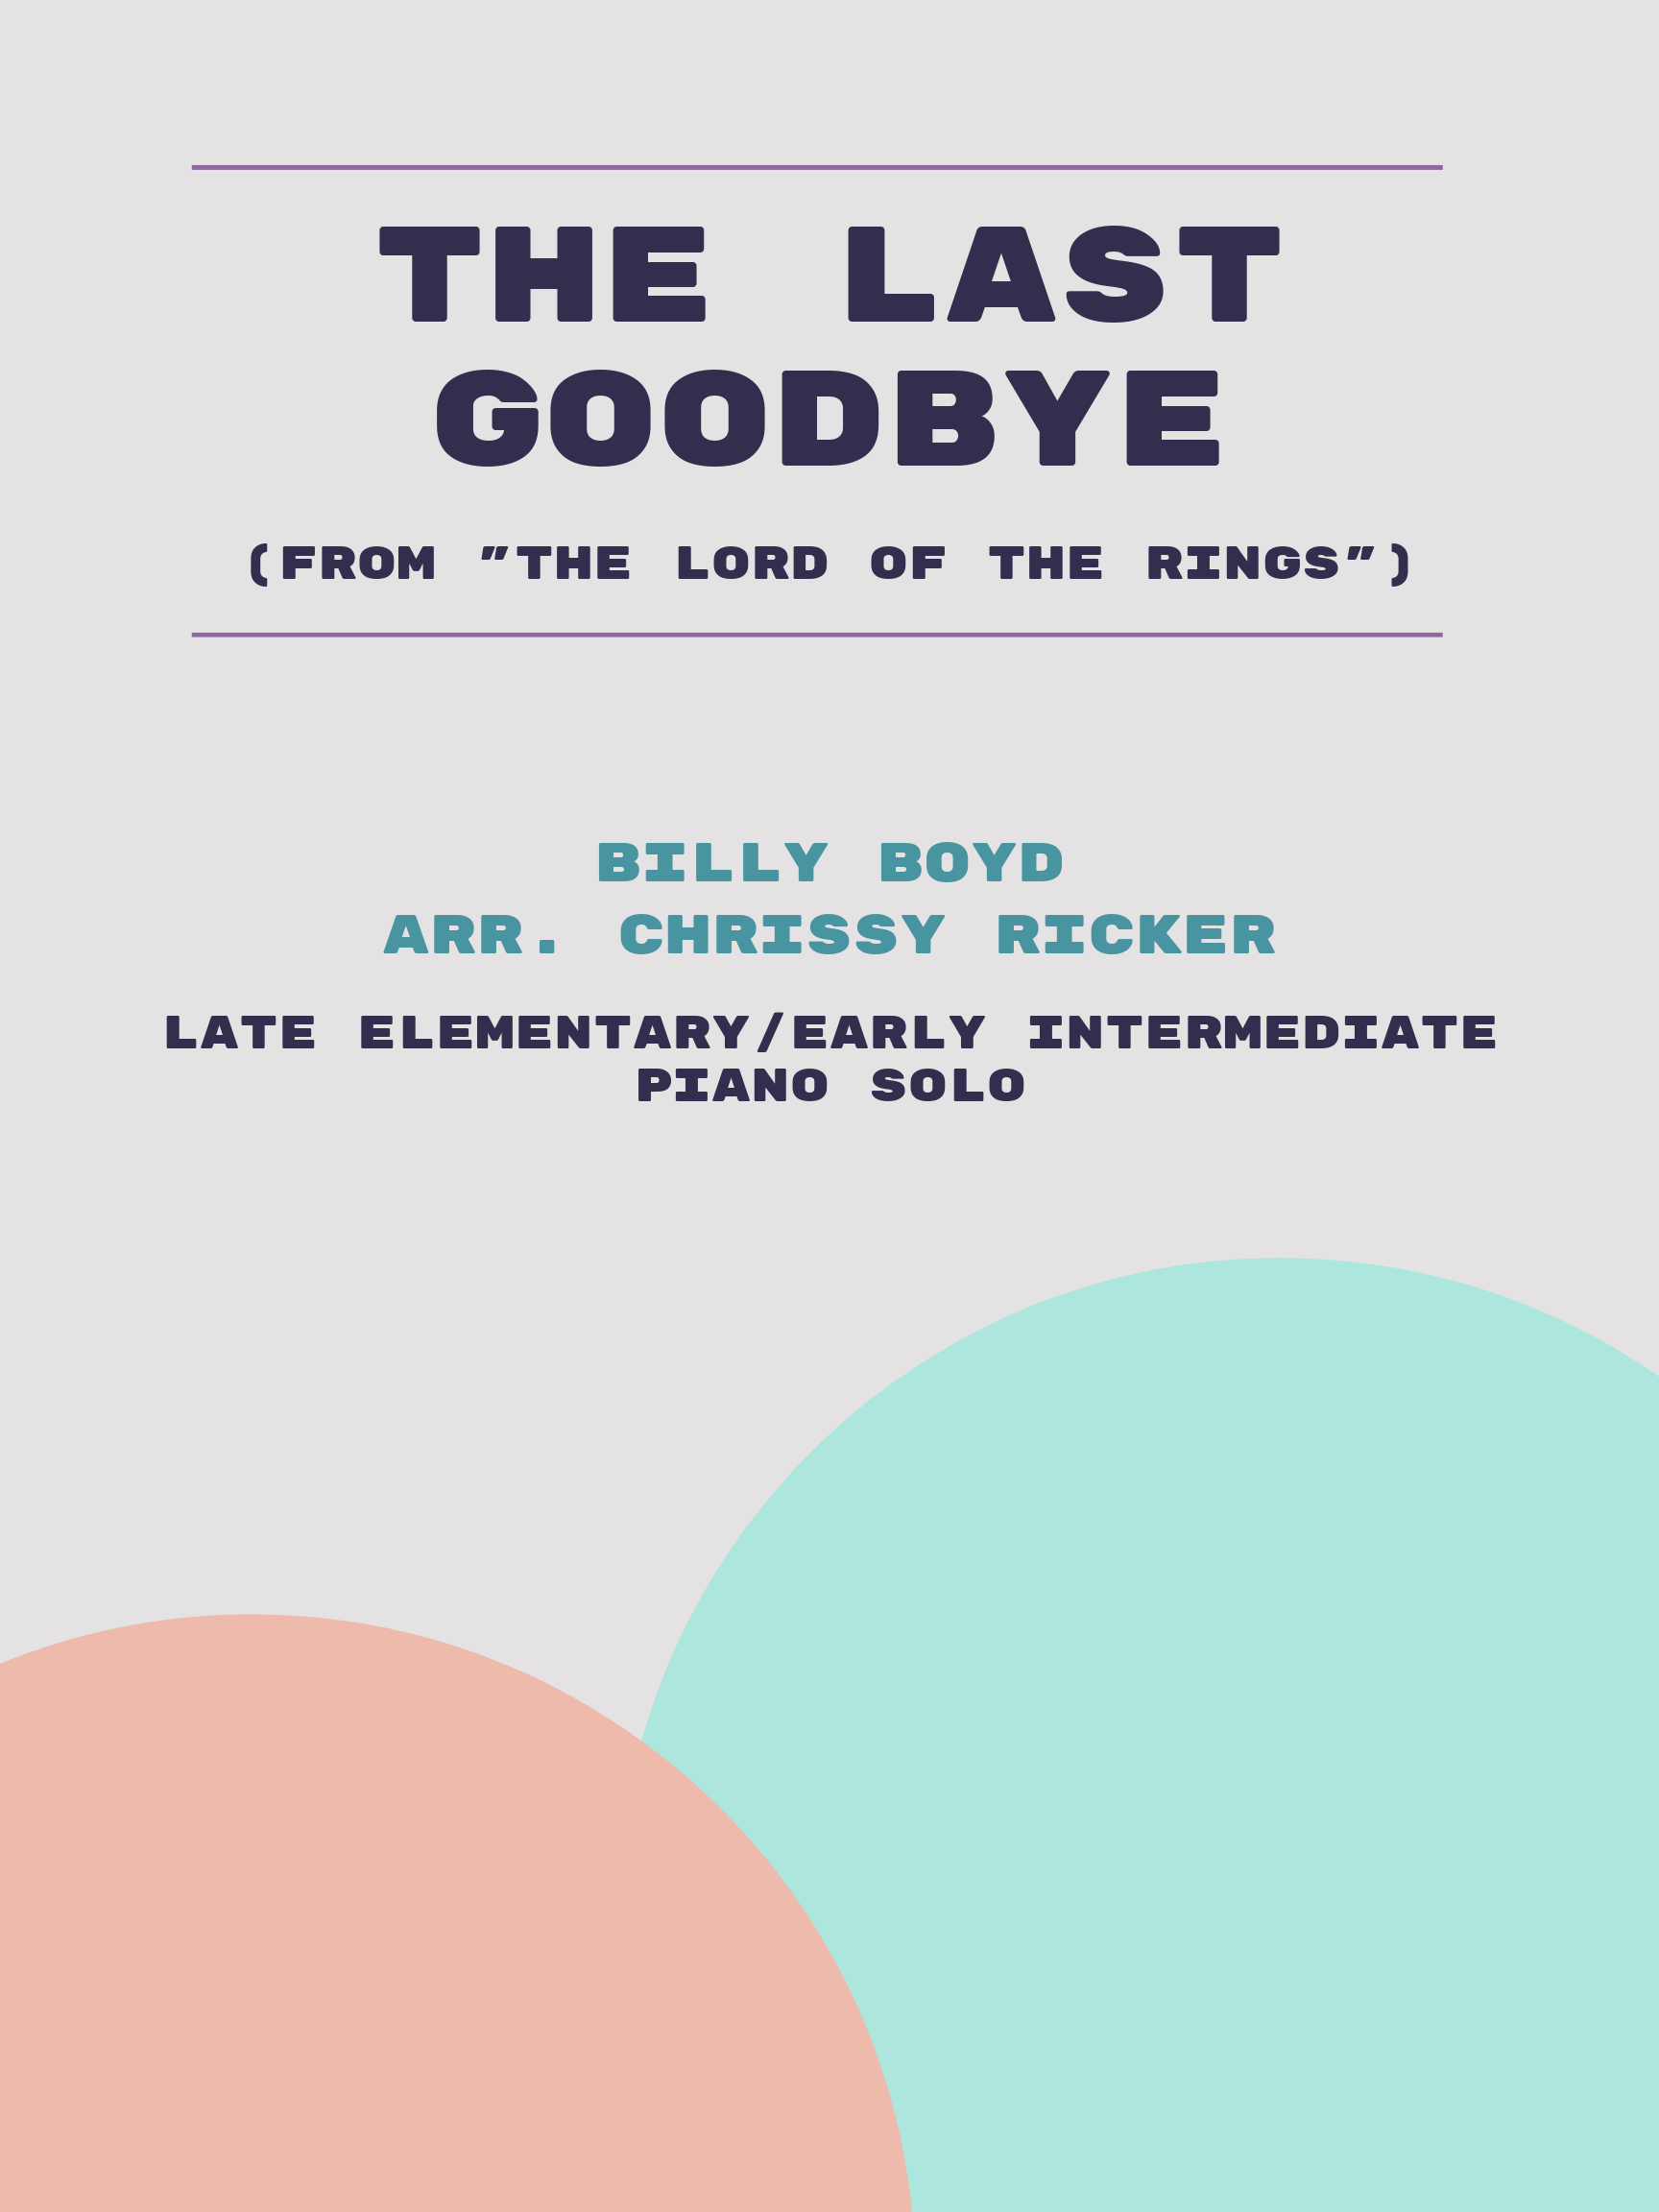 The Last Goodbye by Billy Boyd